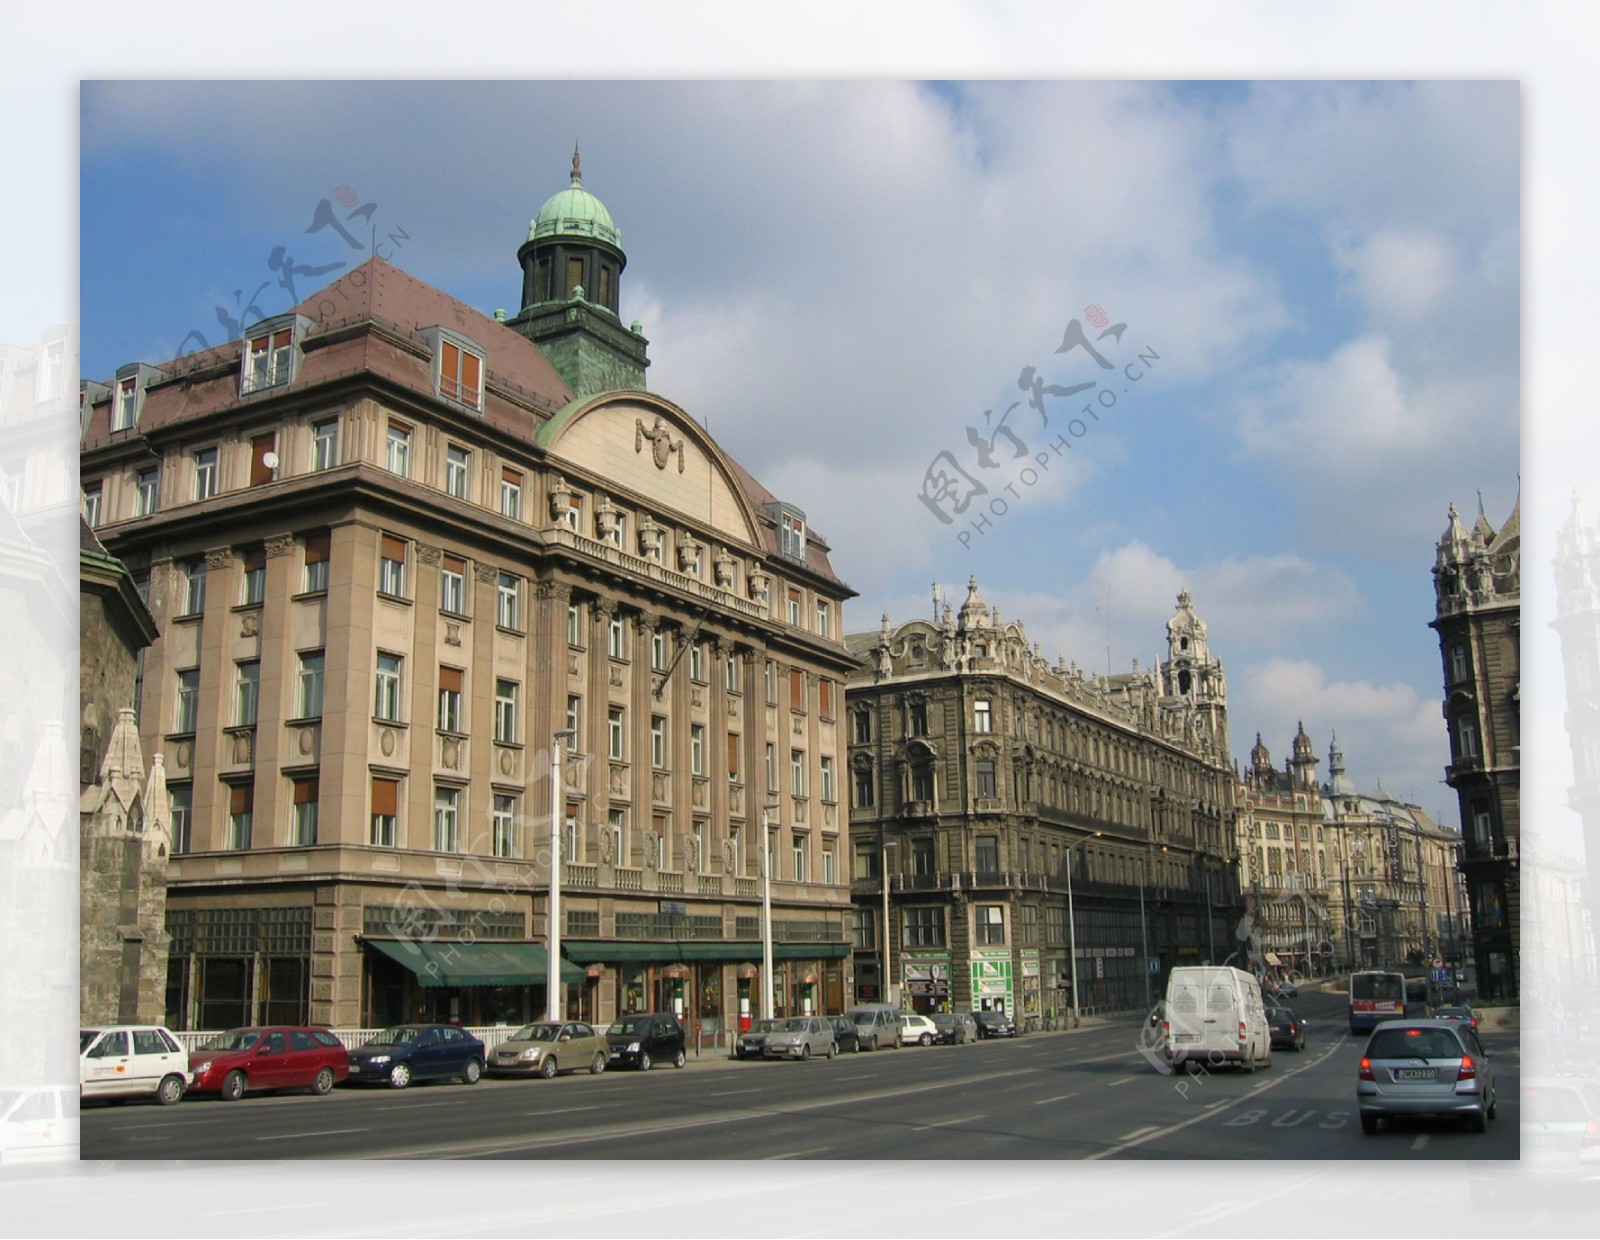 匈牙利布达佩斯街景图片